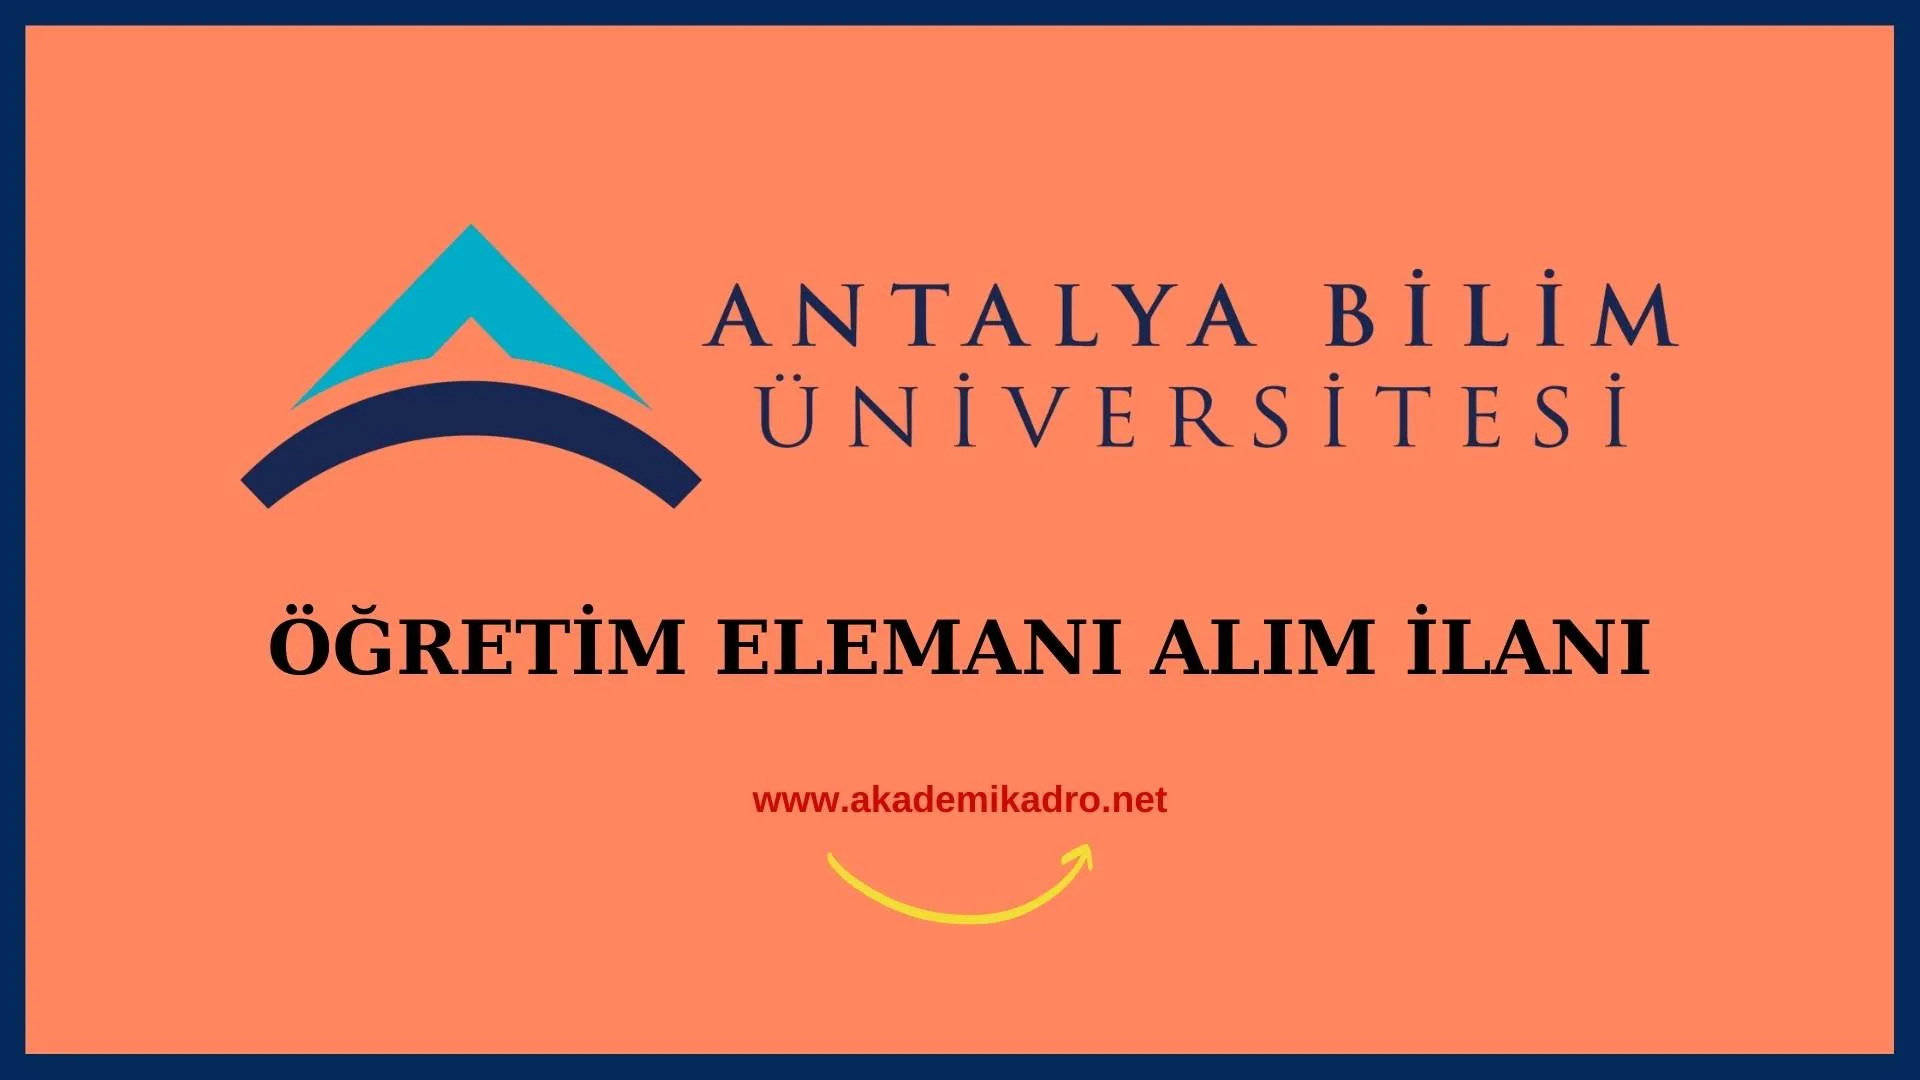 Antalya Bilim Üniversitesi 3 Öğretim üyesi alacak.